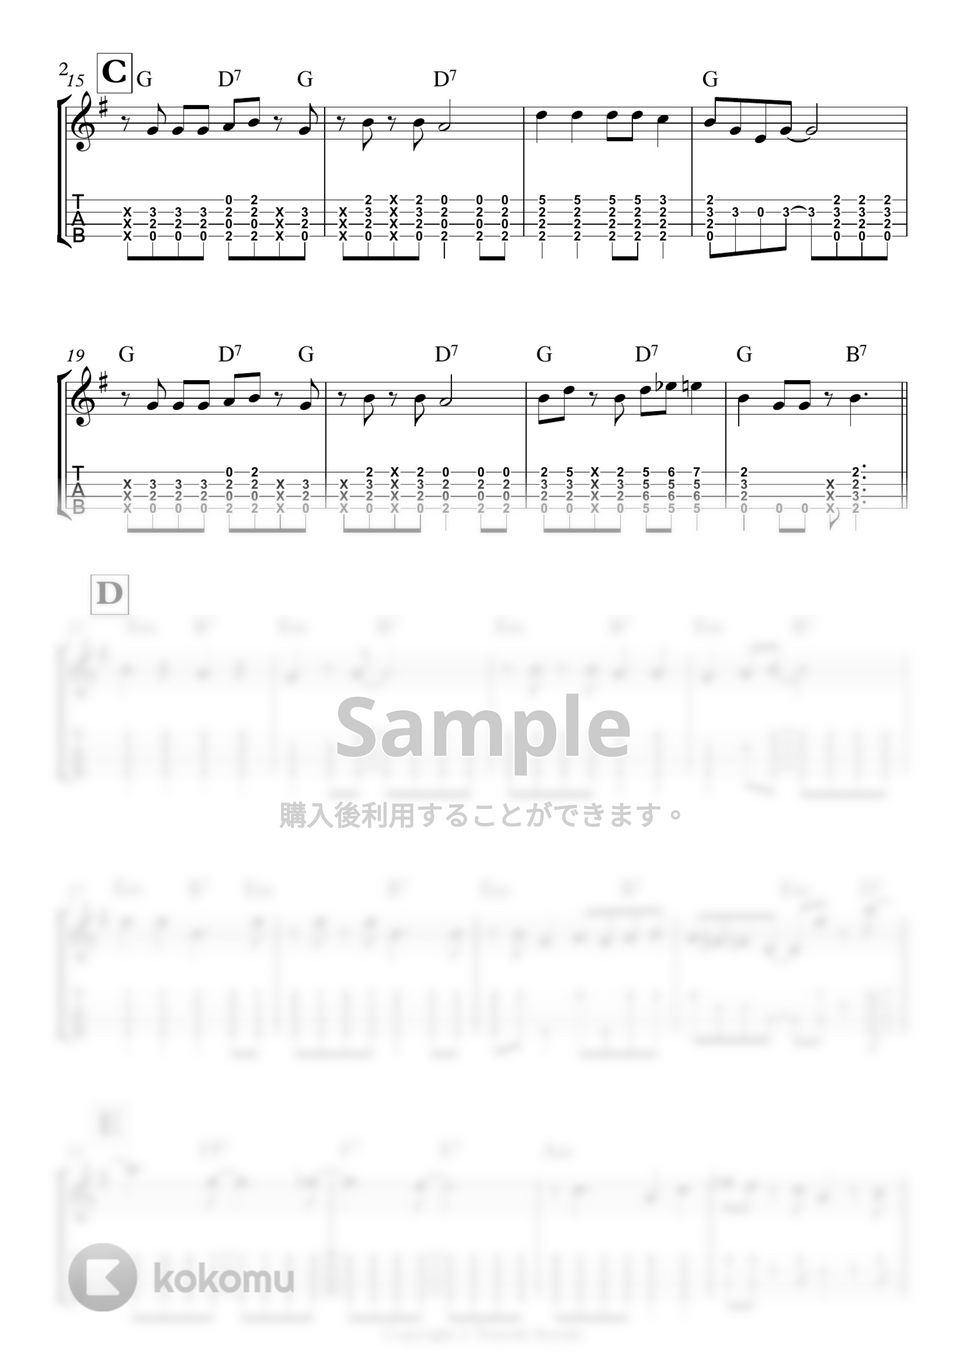 Benny Goodman - Sing Sing Sing by 鈴木智貴